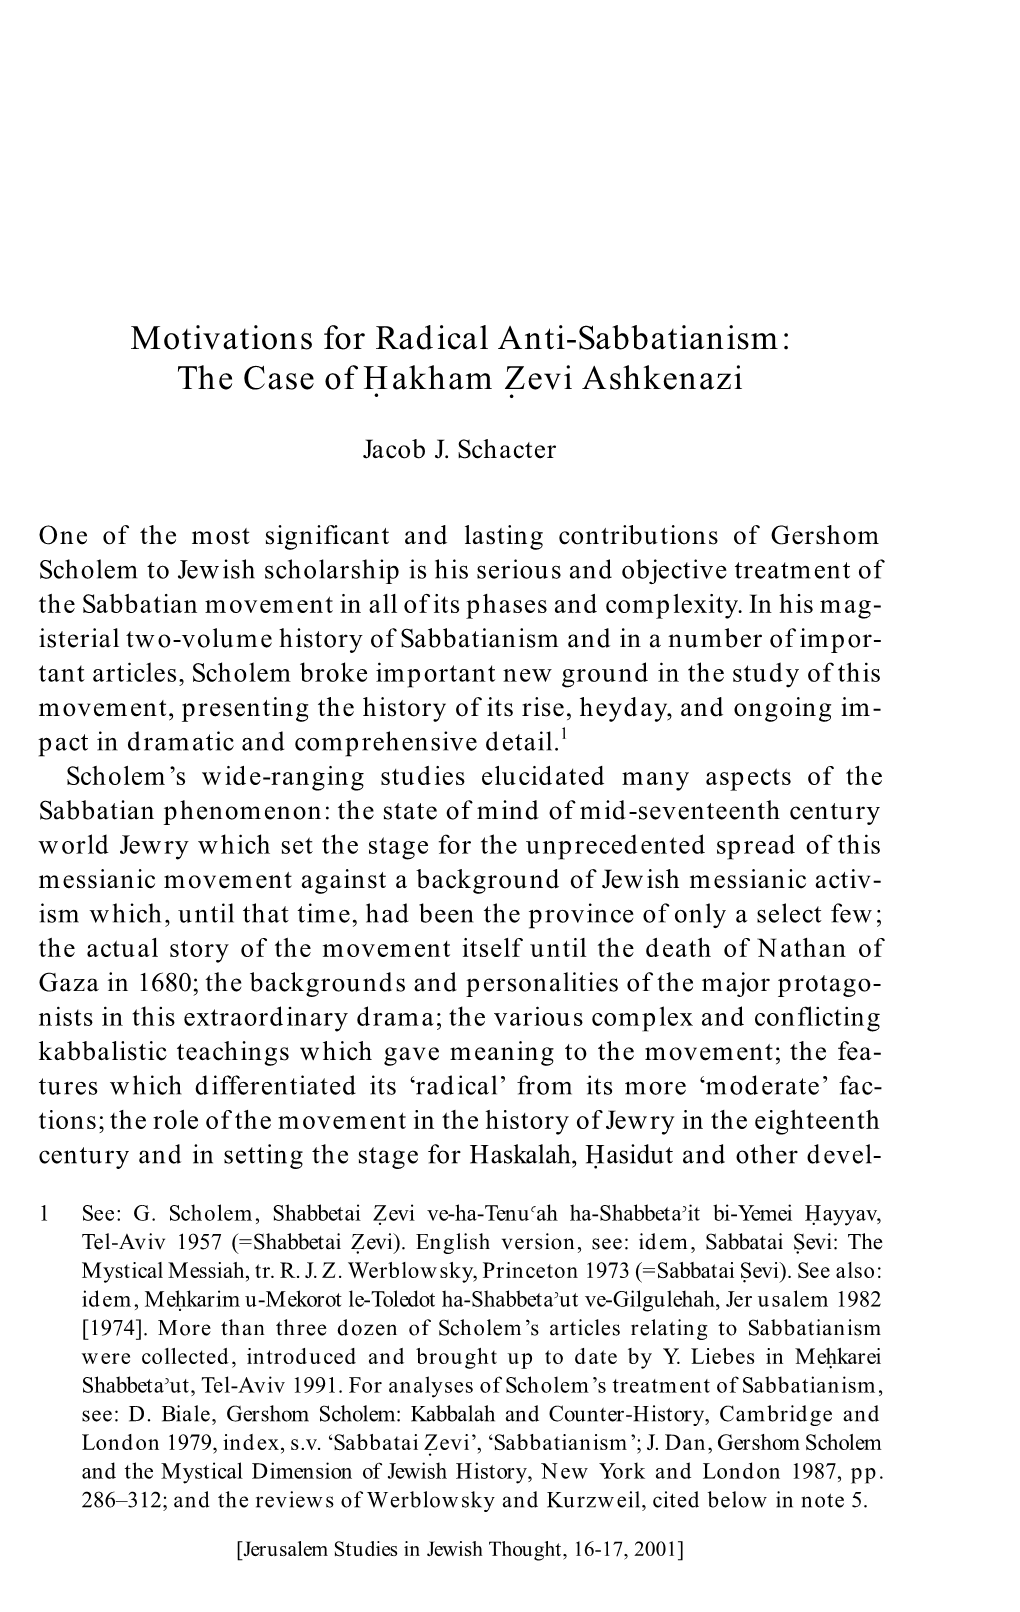 Motivations for Radical Anti-Sabbatianism: the Case of Hakham Zevi Ashkenazi